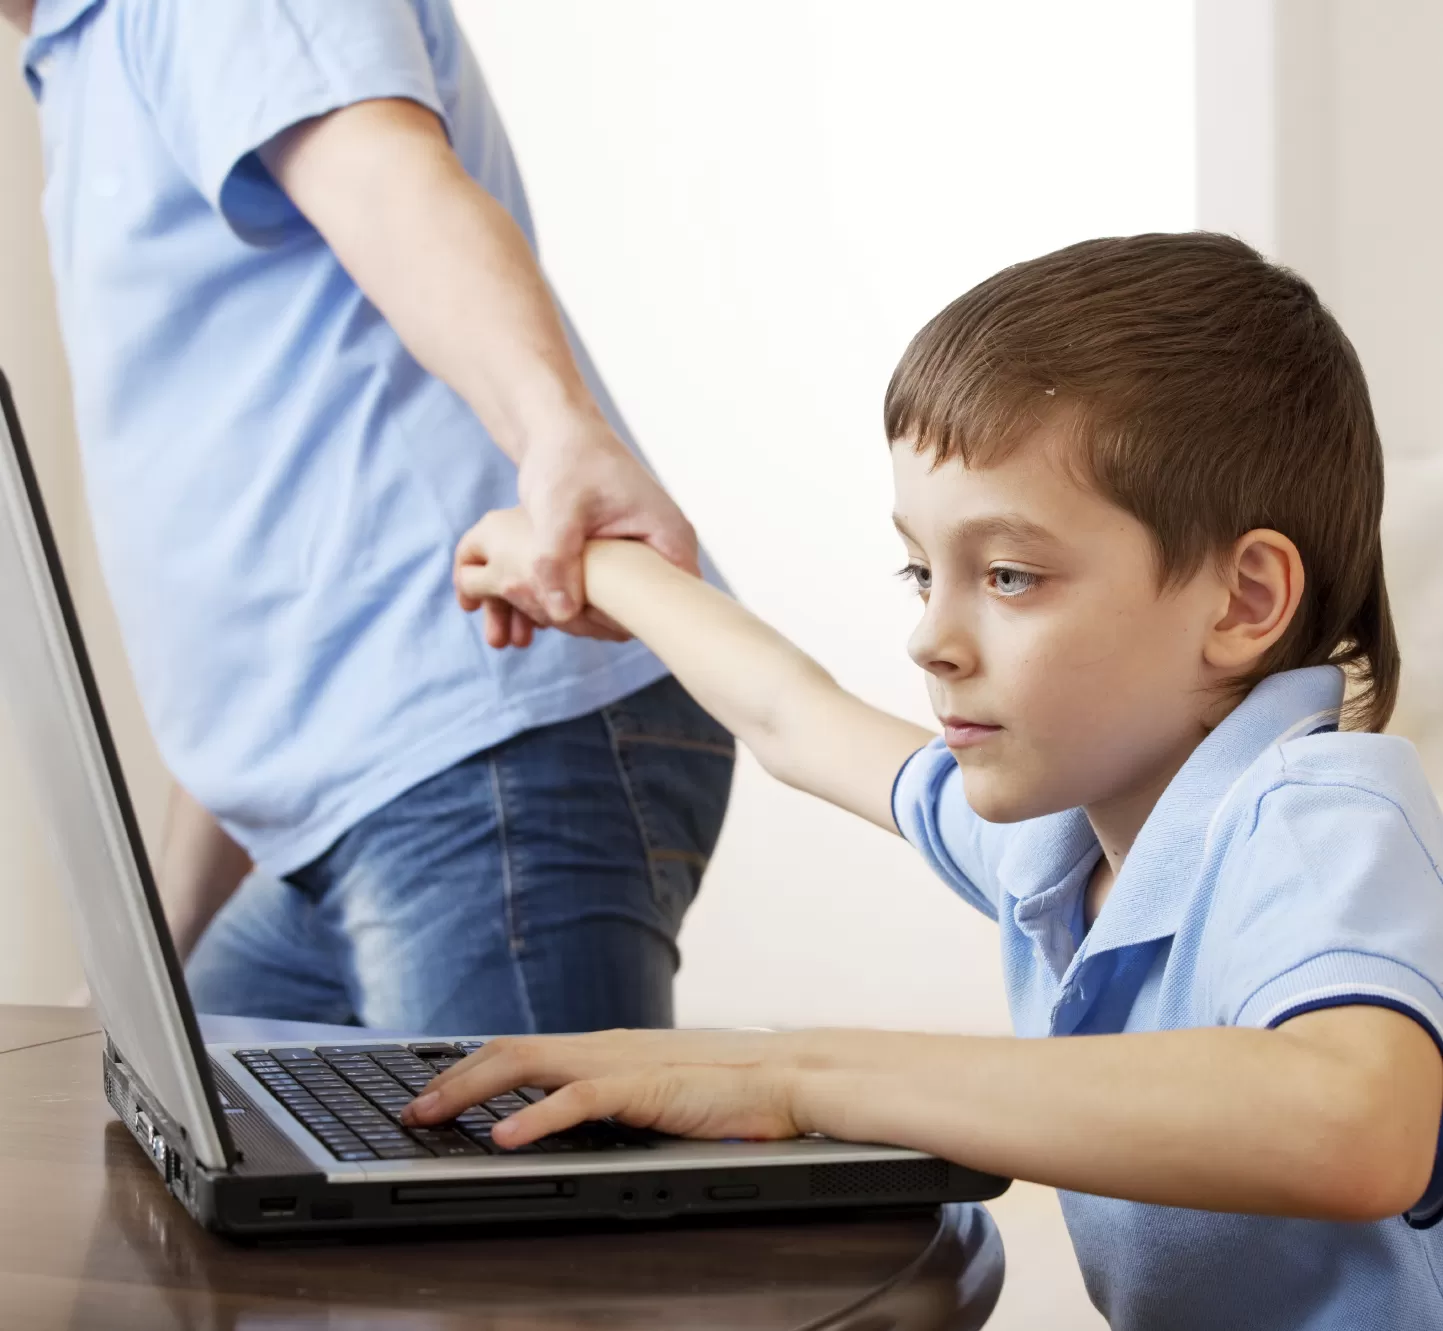 Время играть интернет. Компьютер для детей. Ребенок за компьютером. Компьютерная зависимость. Детям об интернете.